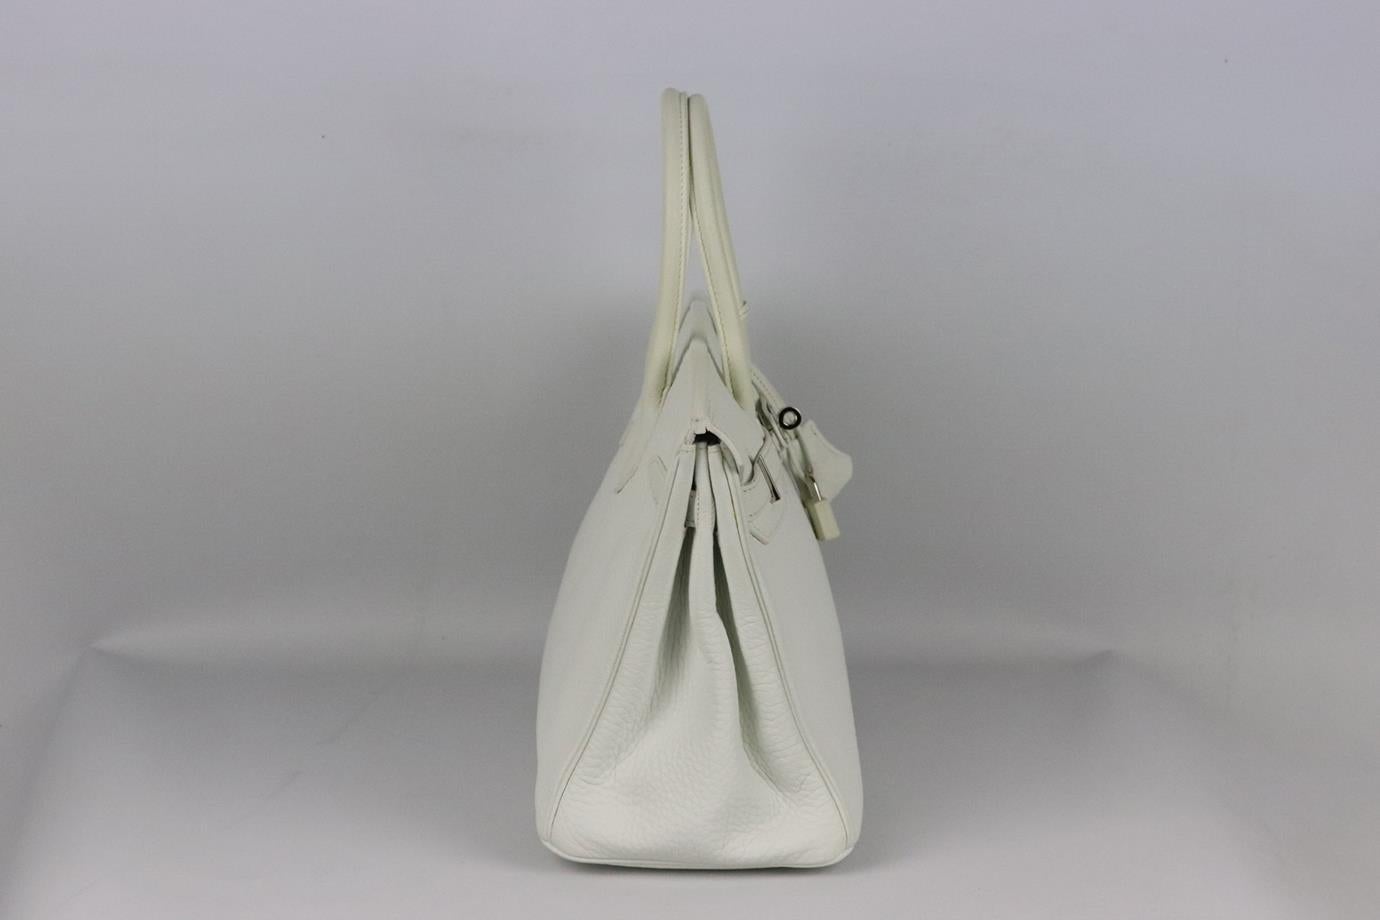 Hermès 2004 Birkin 30cm Clemence sac en cuir. Fabriqué en France, ce magnifique sac à main Hermès 'Birkin' 2004 a été réalisé en cuir 'Clemence' de couleur blanche à l'extérieur et à l'intérieur assorti. Cette pièce est décorée de ferrures en